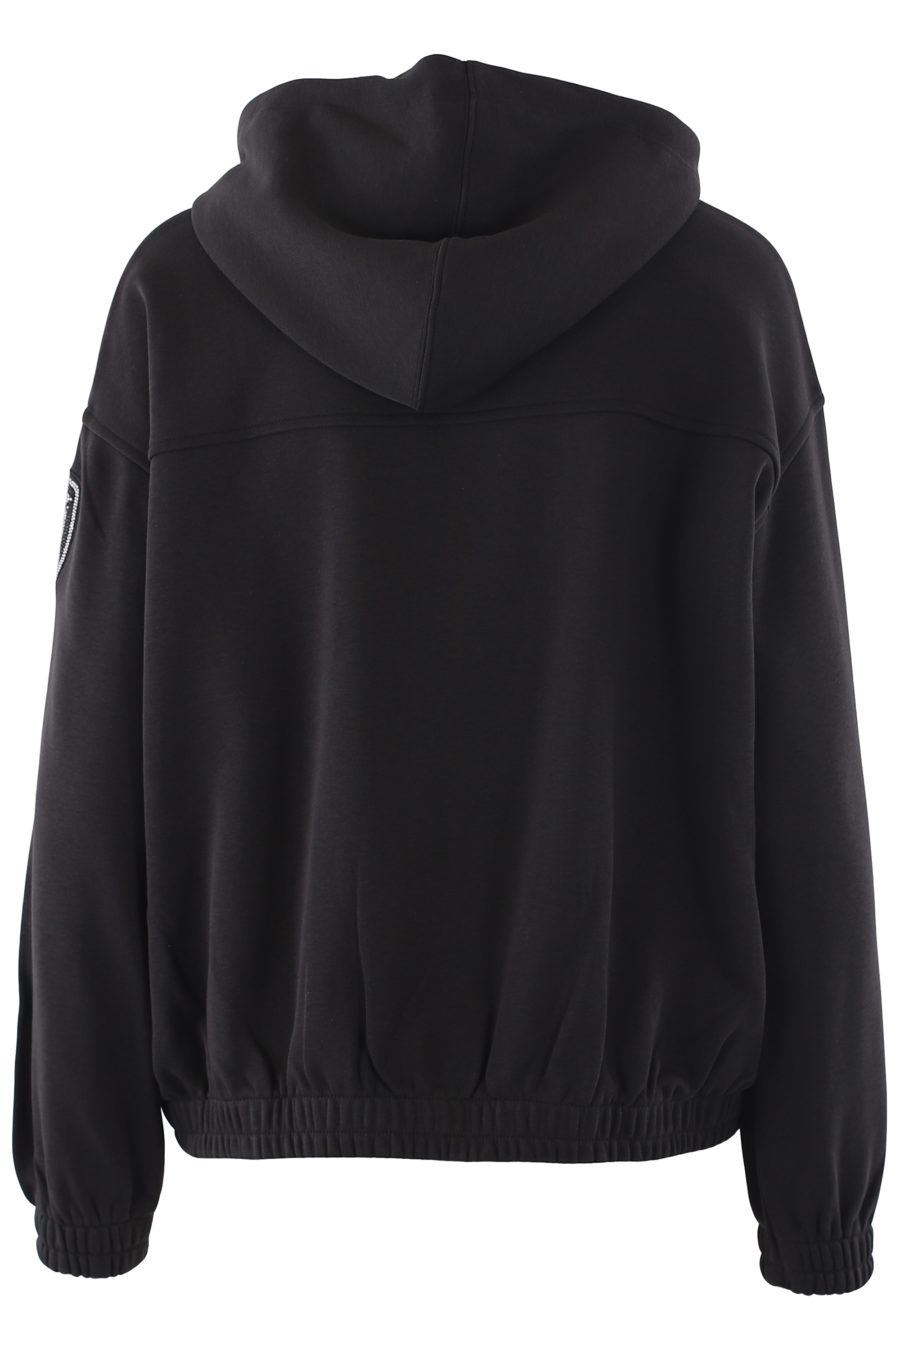 Schwarzes Sweatshirt mit Kapuze und Kristallen als Logo - IMG 6788